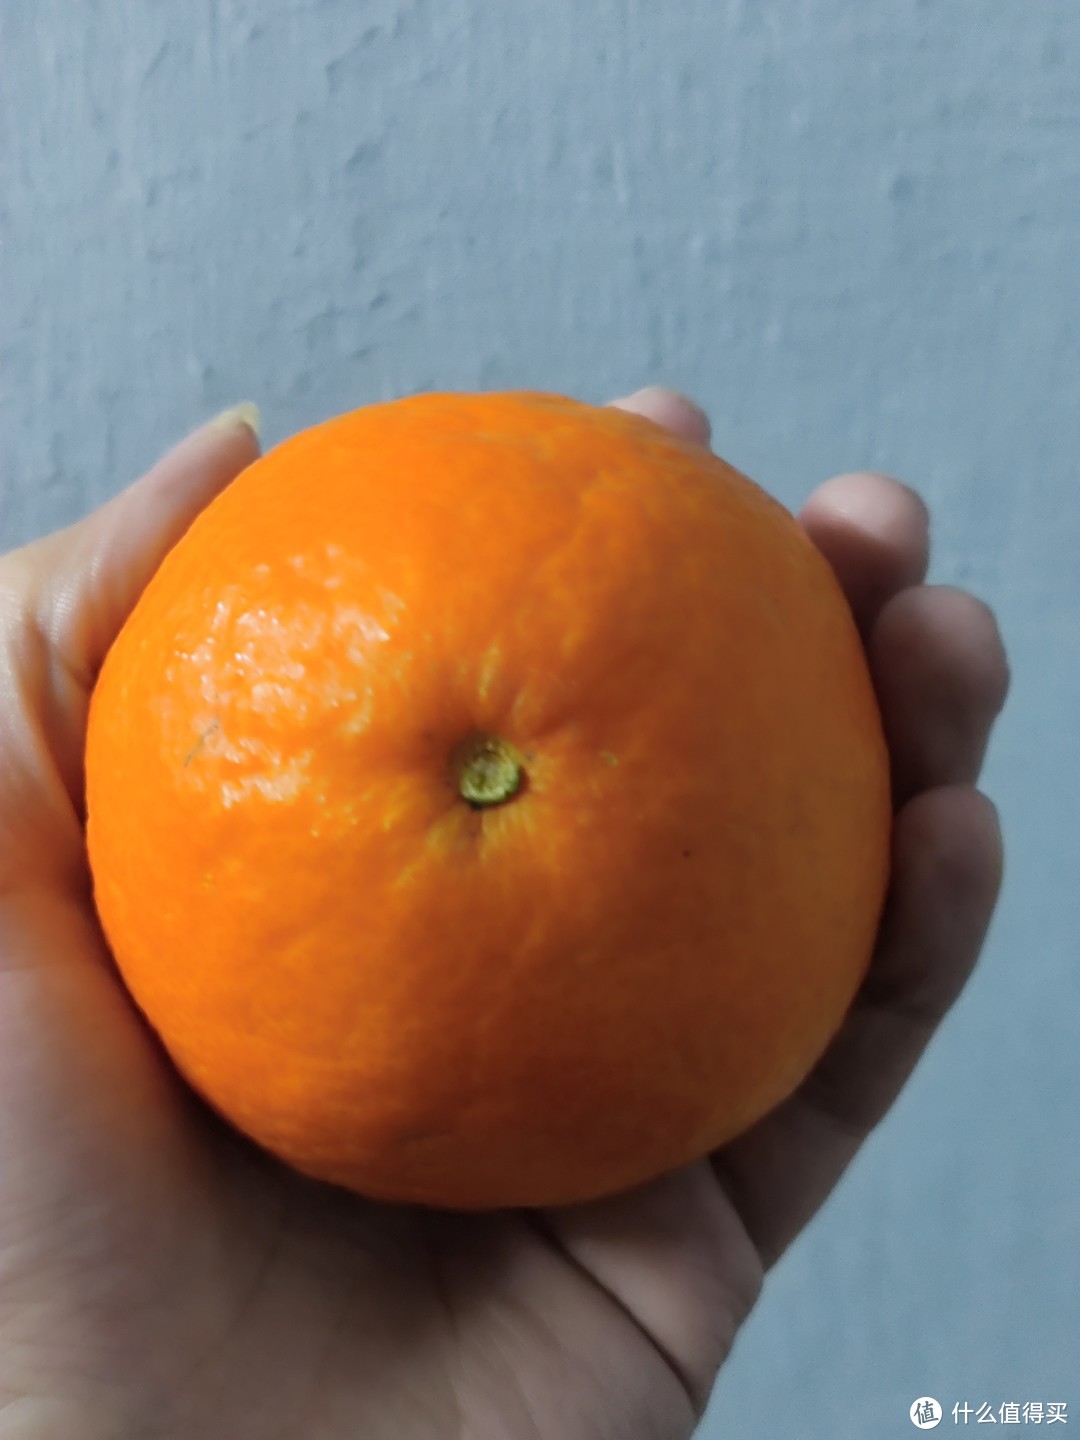 果冻橙真是最好吃的橙子。